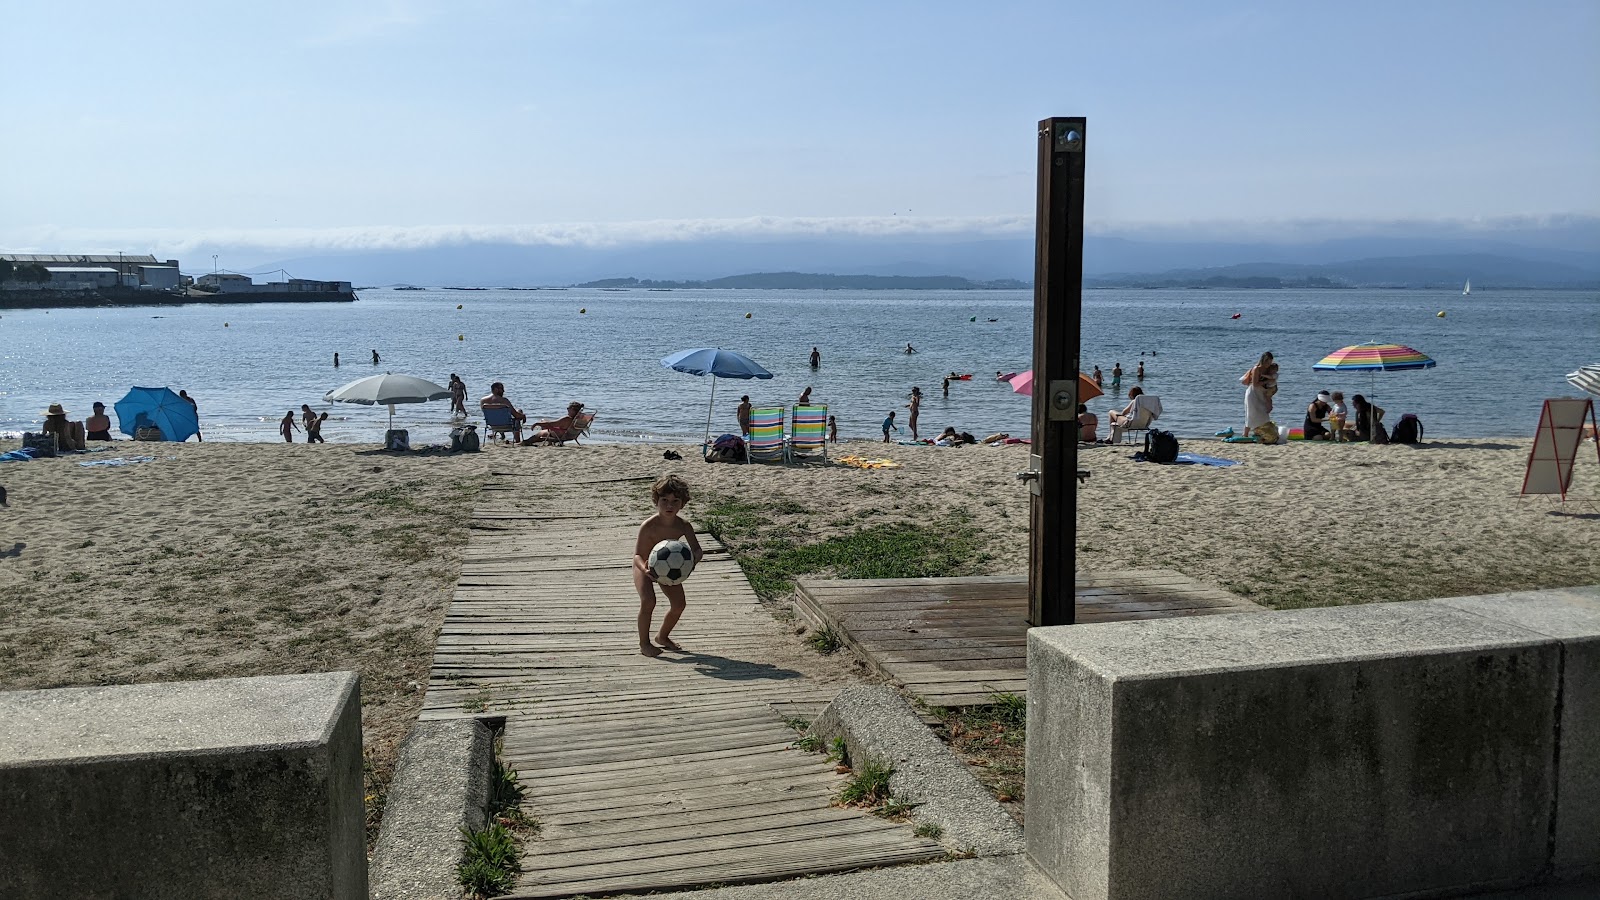 Zdjęcie Preguntoiro beach z poziomem czystości wysoki